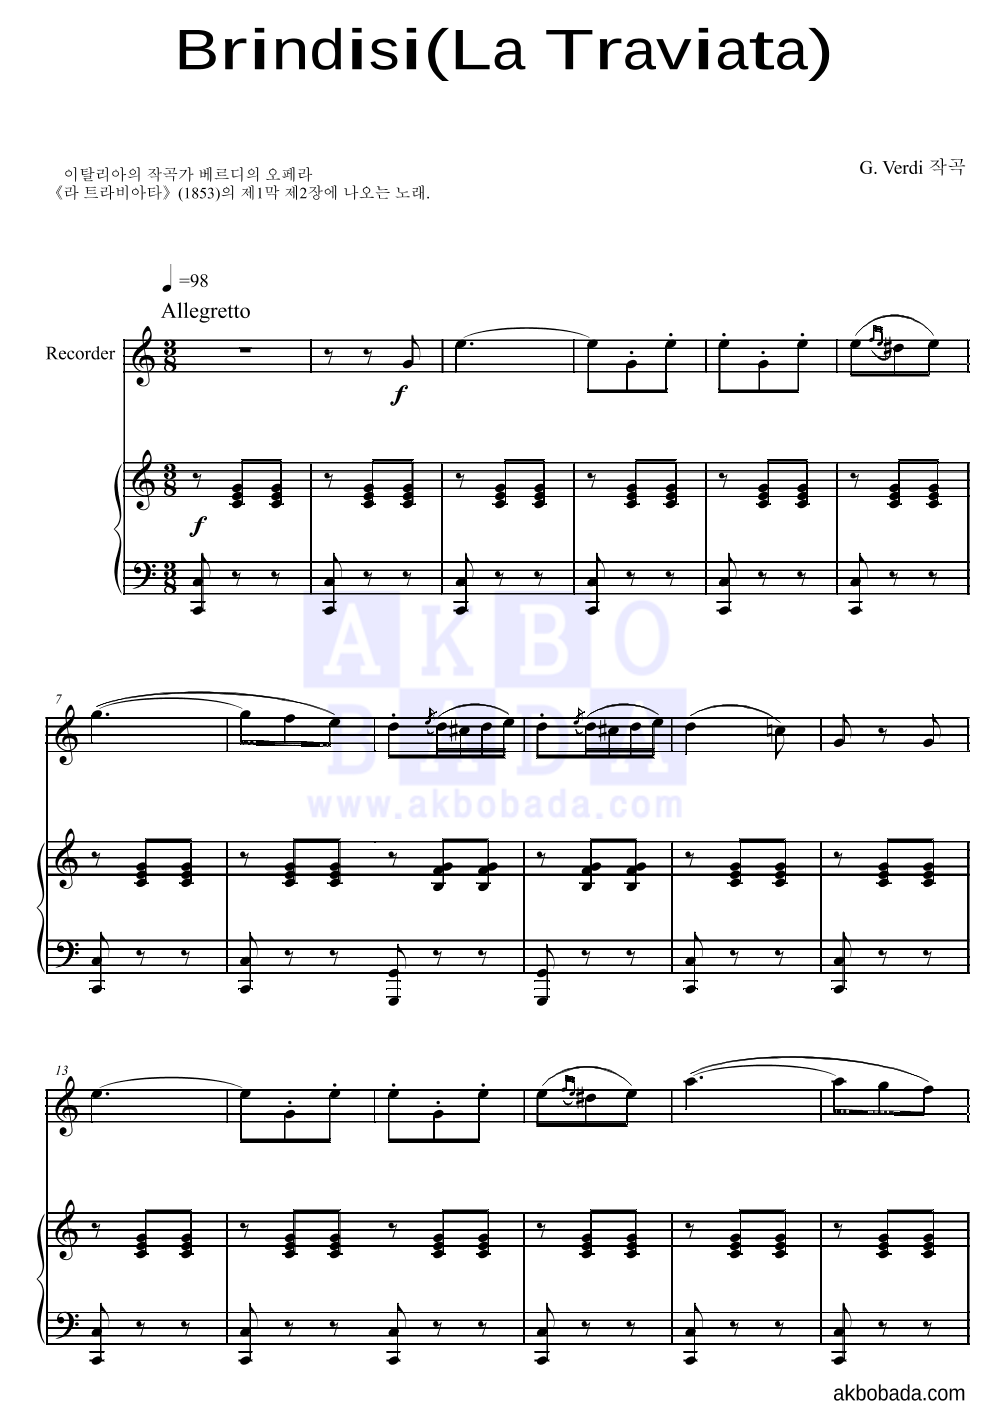 베르디 - Brindisi(La Traviata)축배의 노래 리코더&피아노 악보 